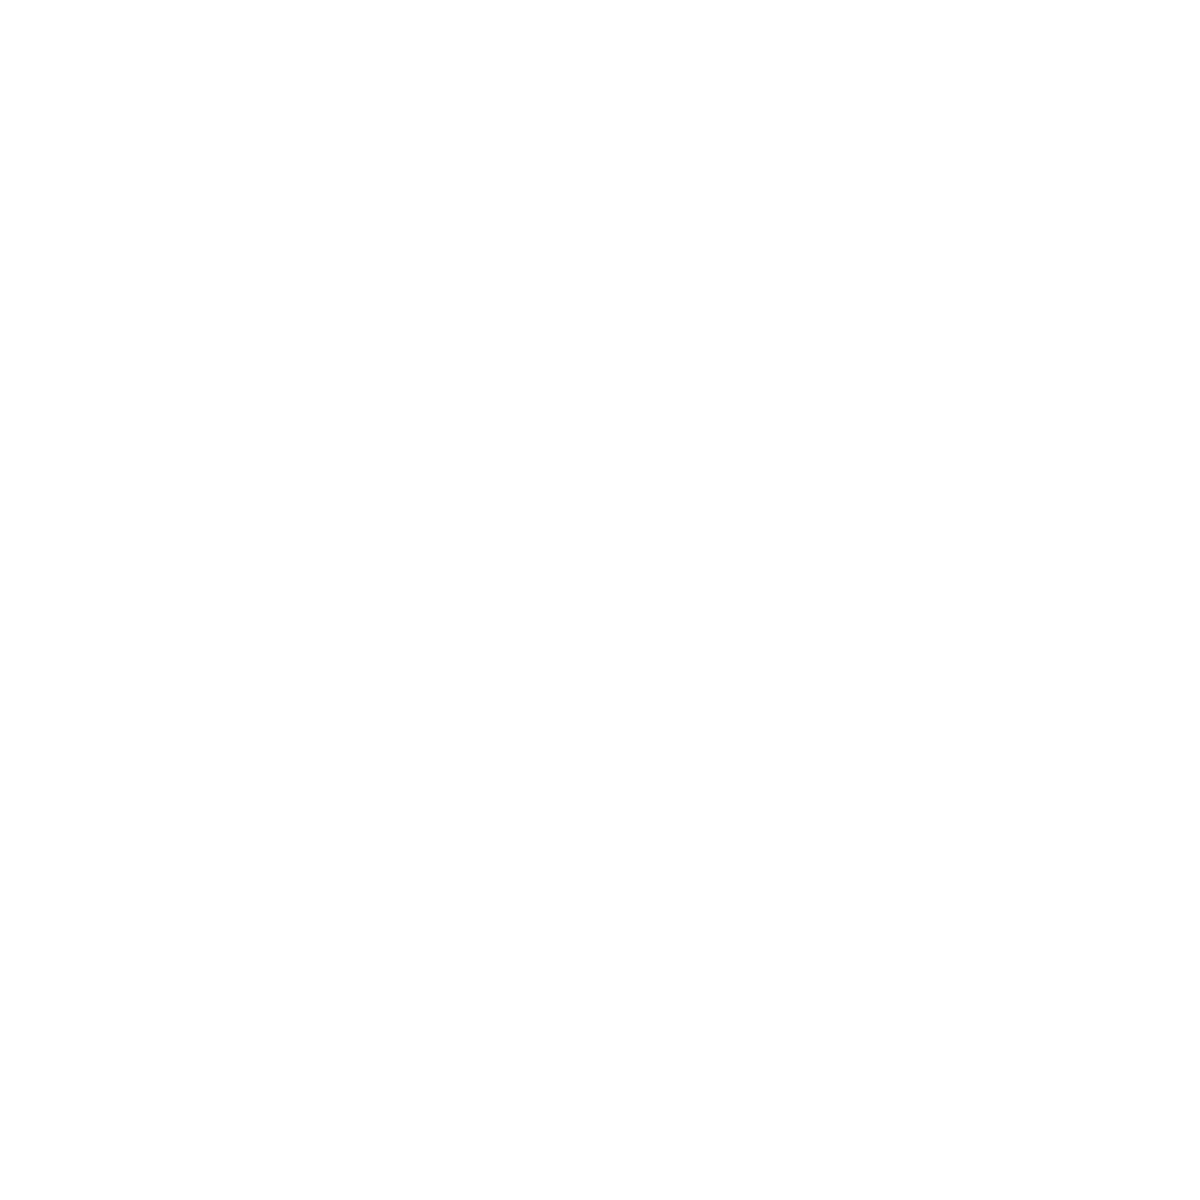 Rene's Garage Inc.